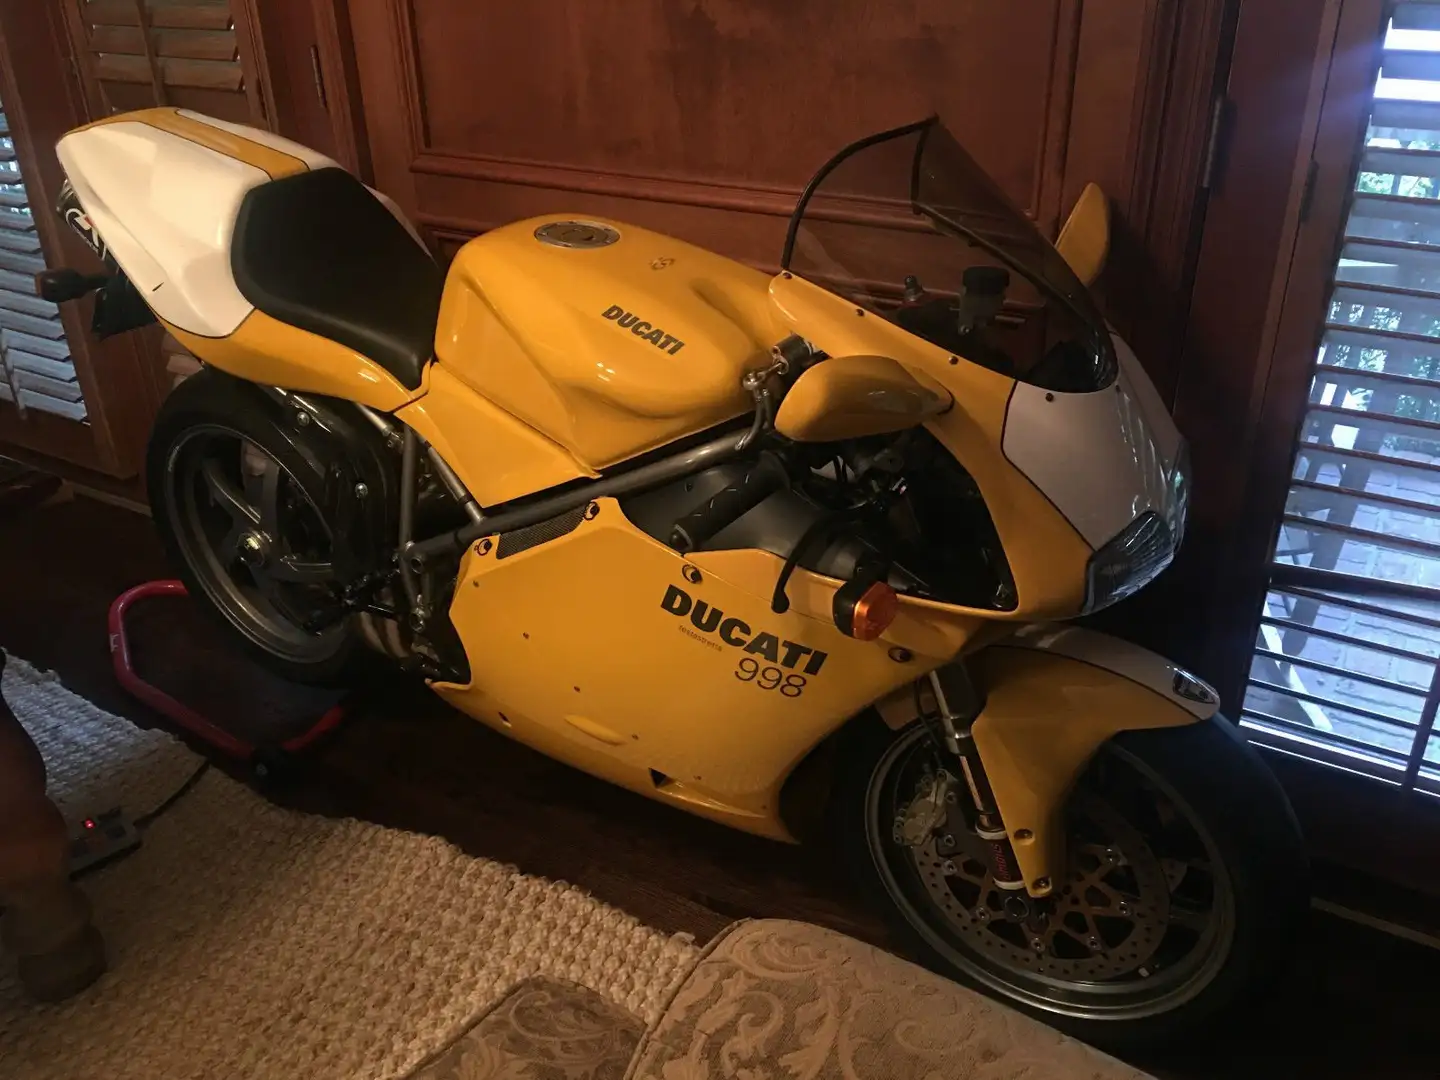 Ducati 998 Amarillo - 1